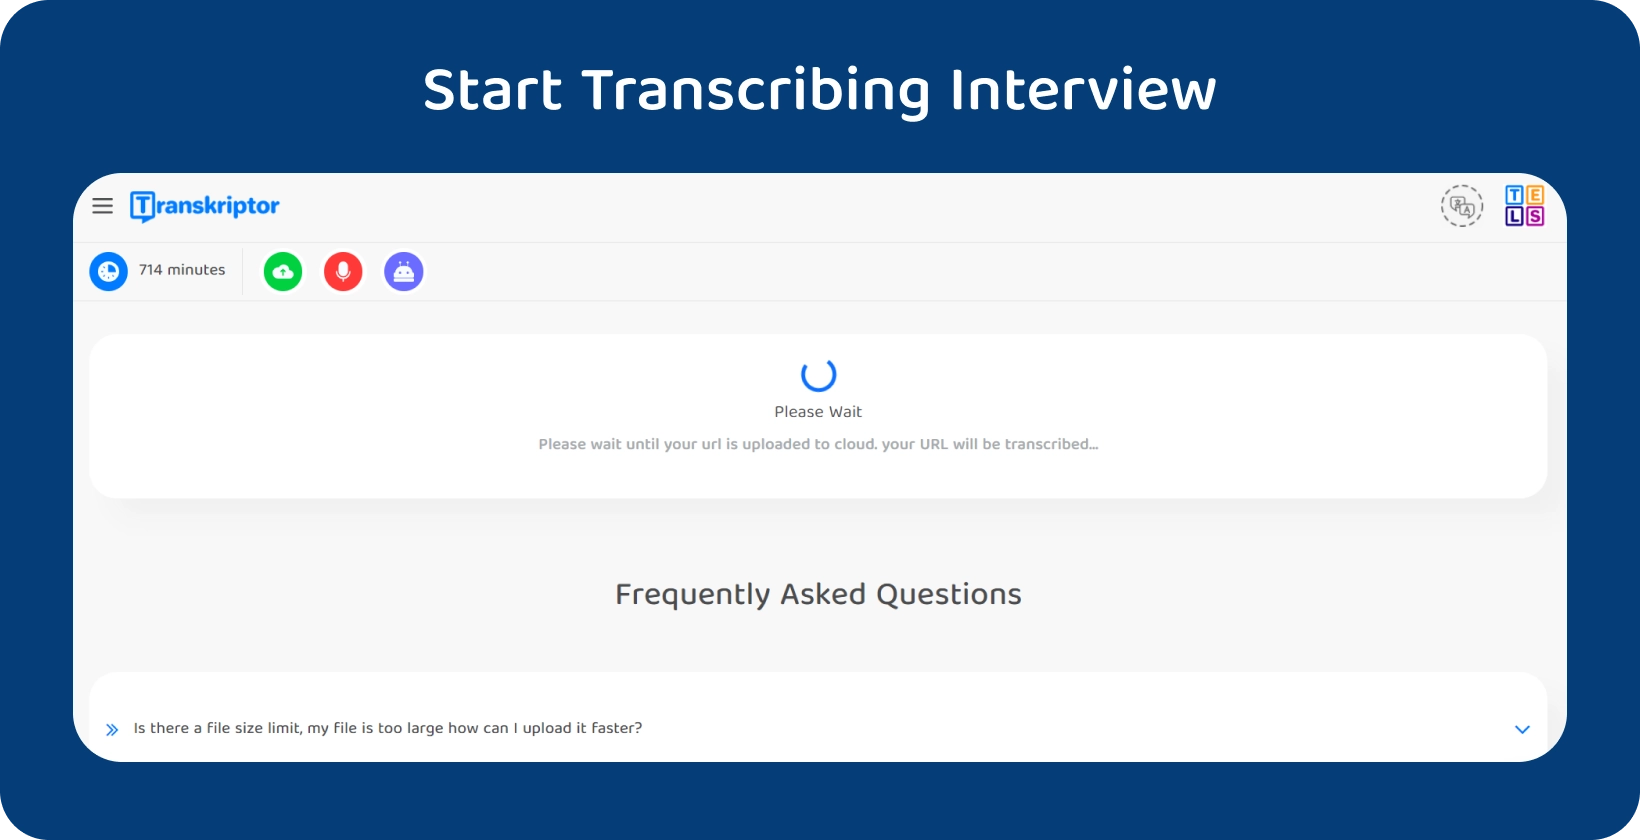 Mulai transkripsi disertasi dengan Transkriptor, menunjukkan wawancara 714 menit menunggu untuk diproses.